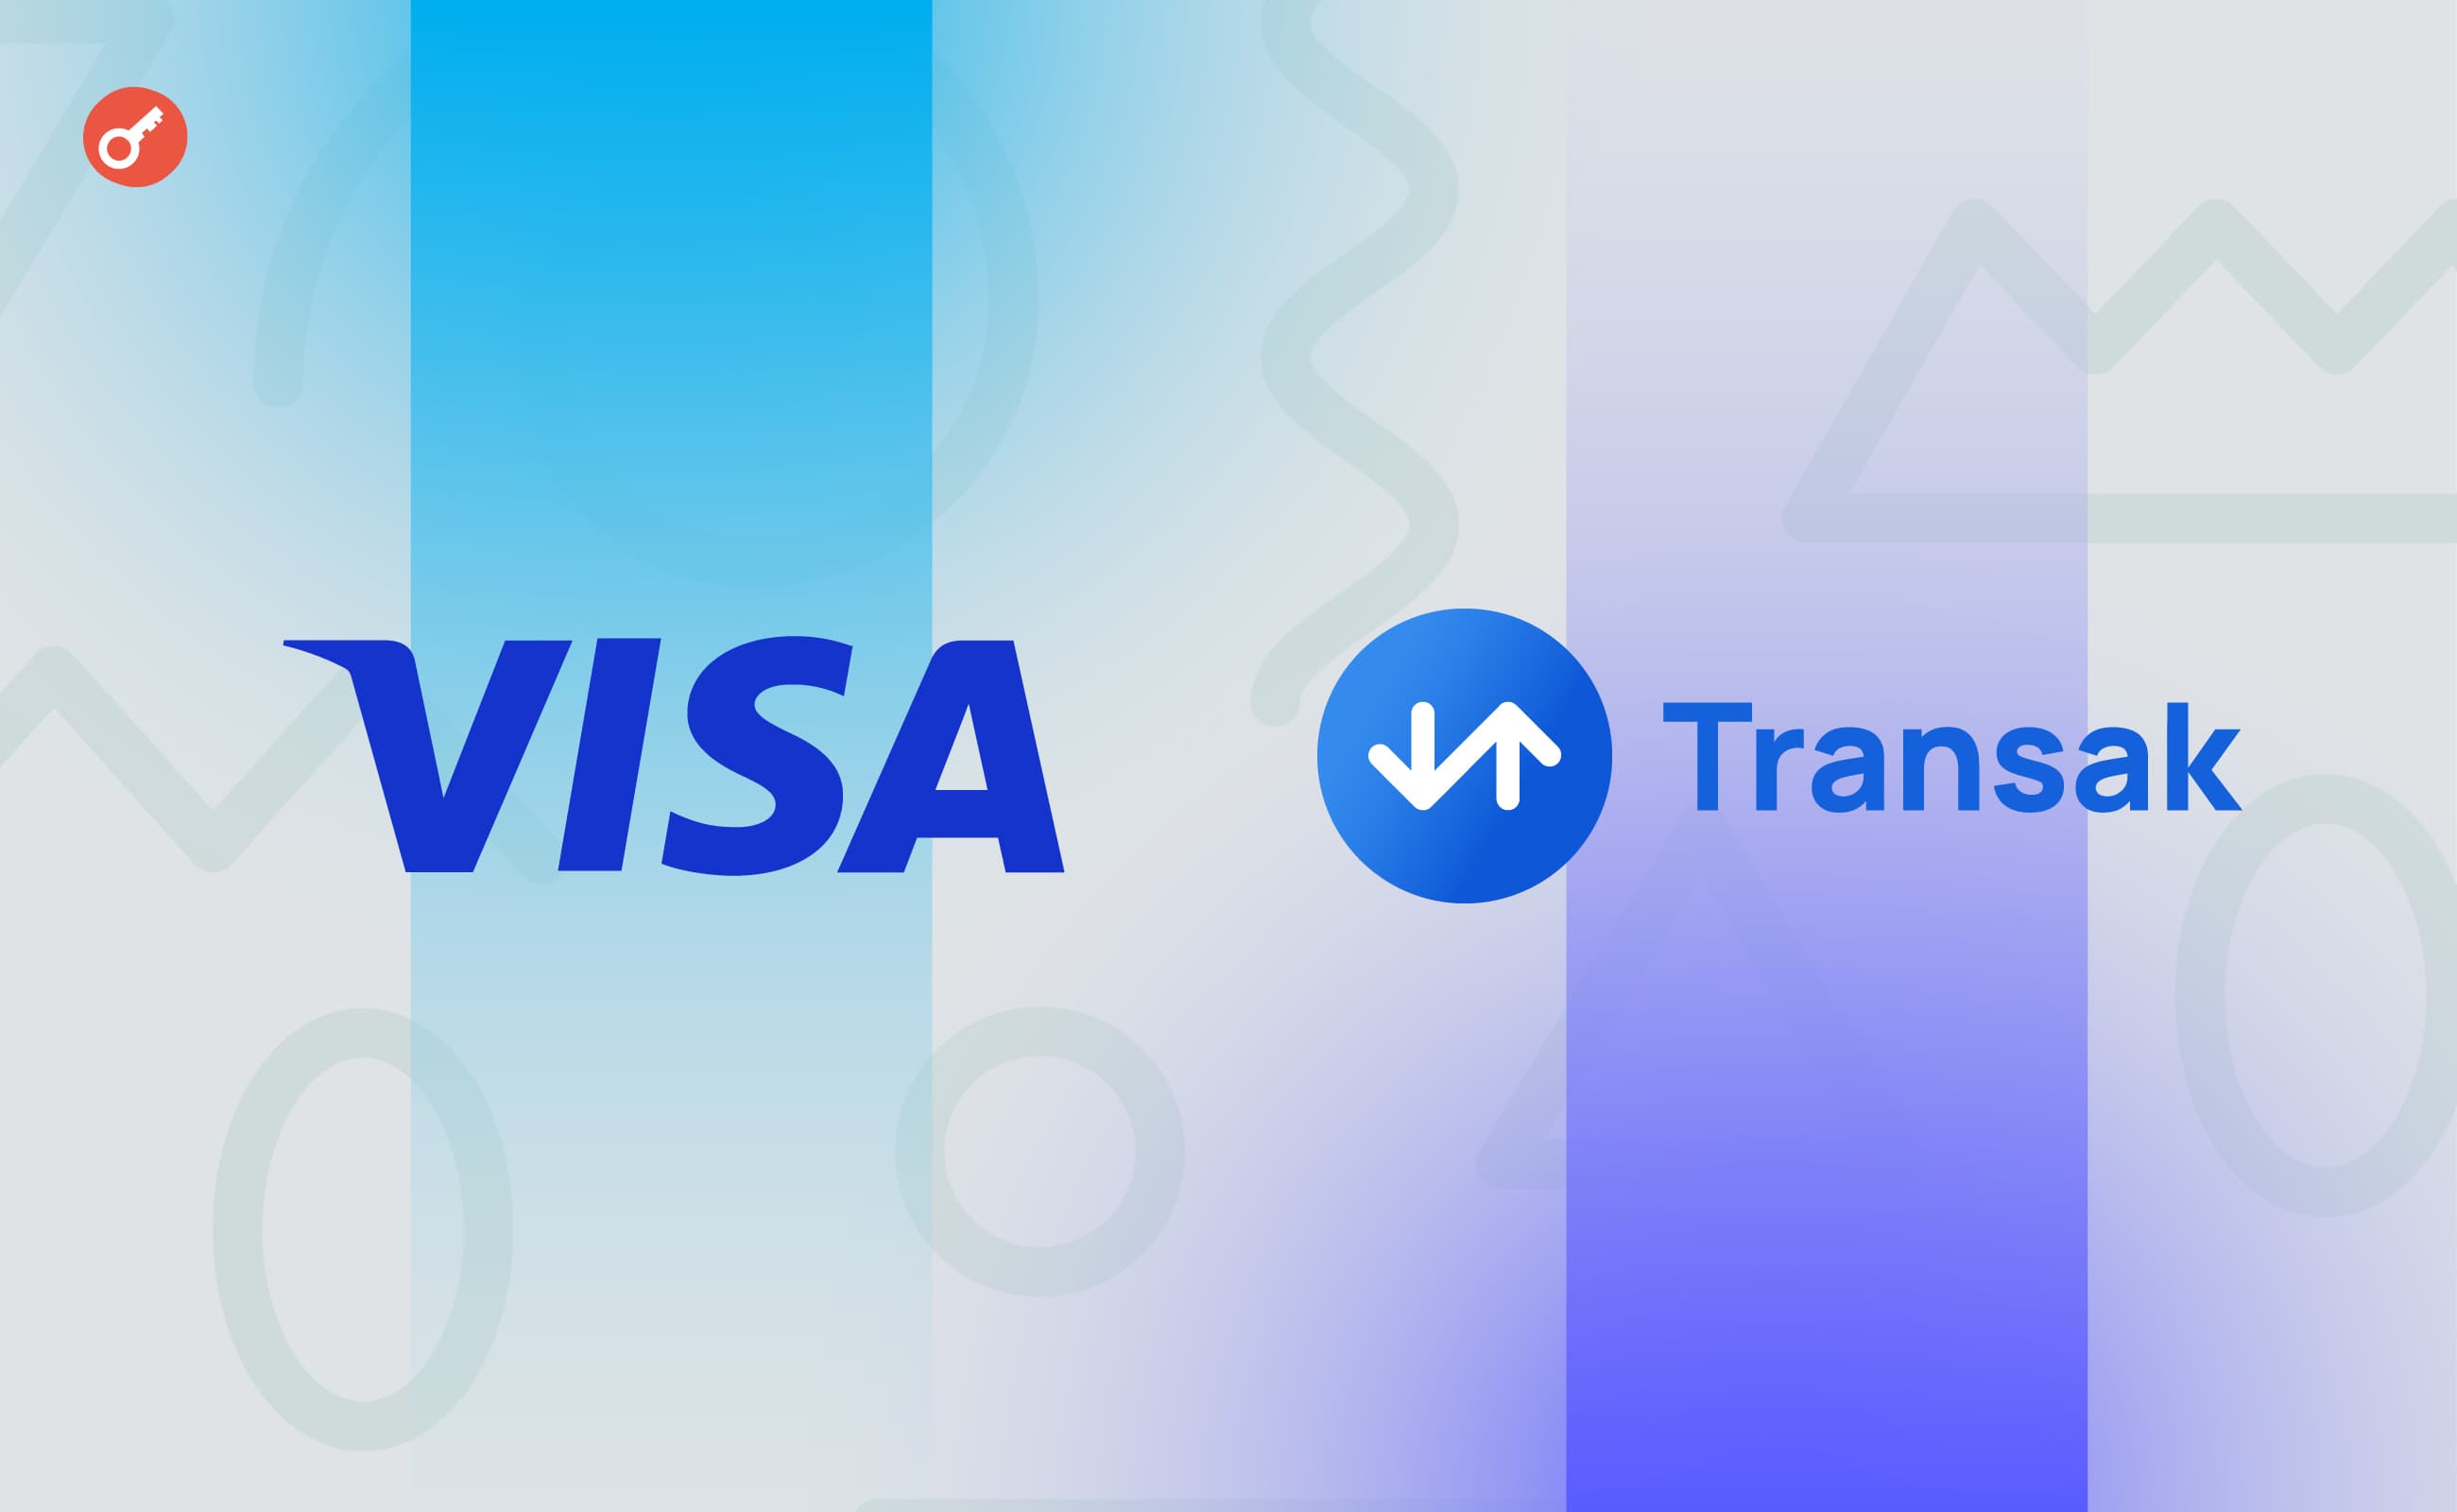 Transak заключила партнерство с Visa для конвертации криптовалют в фиат . Заглавный коллаж новости.